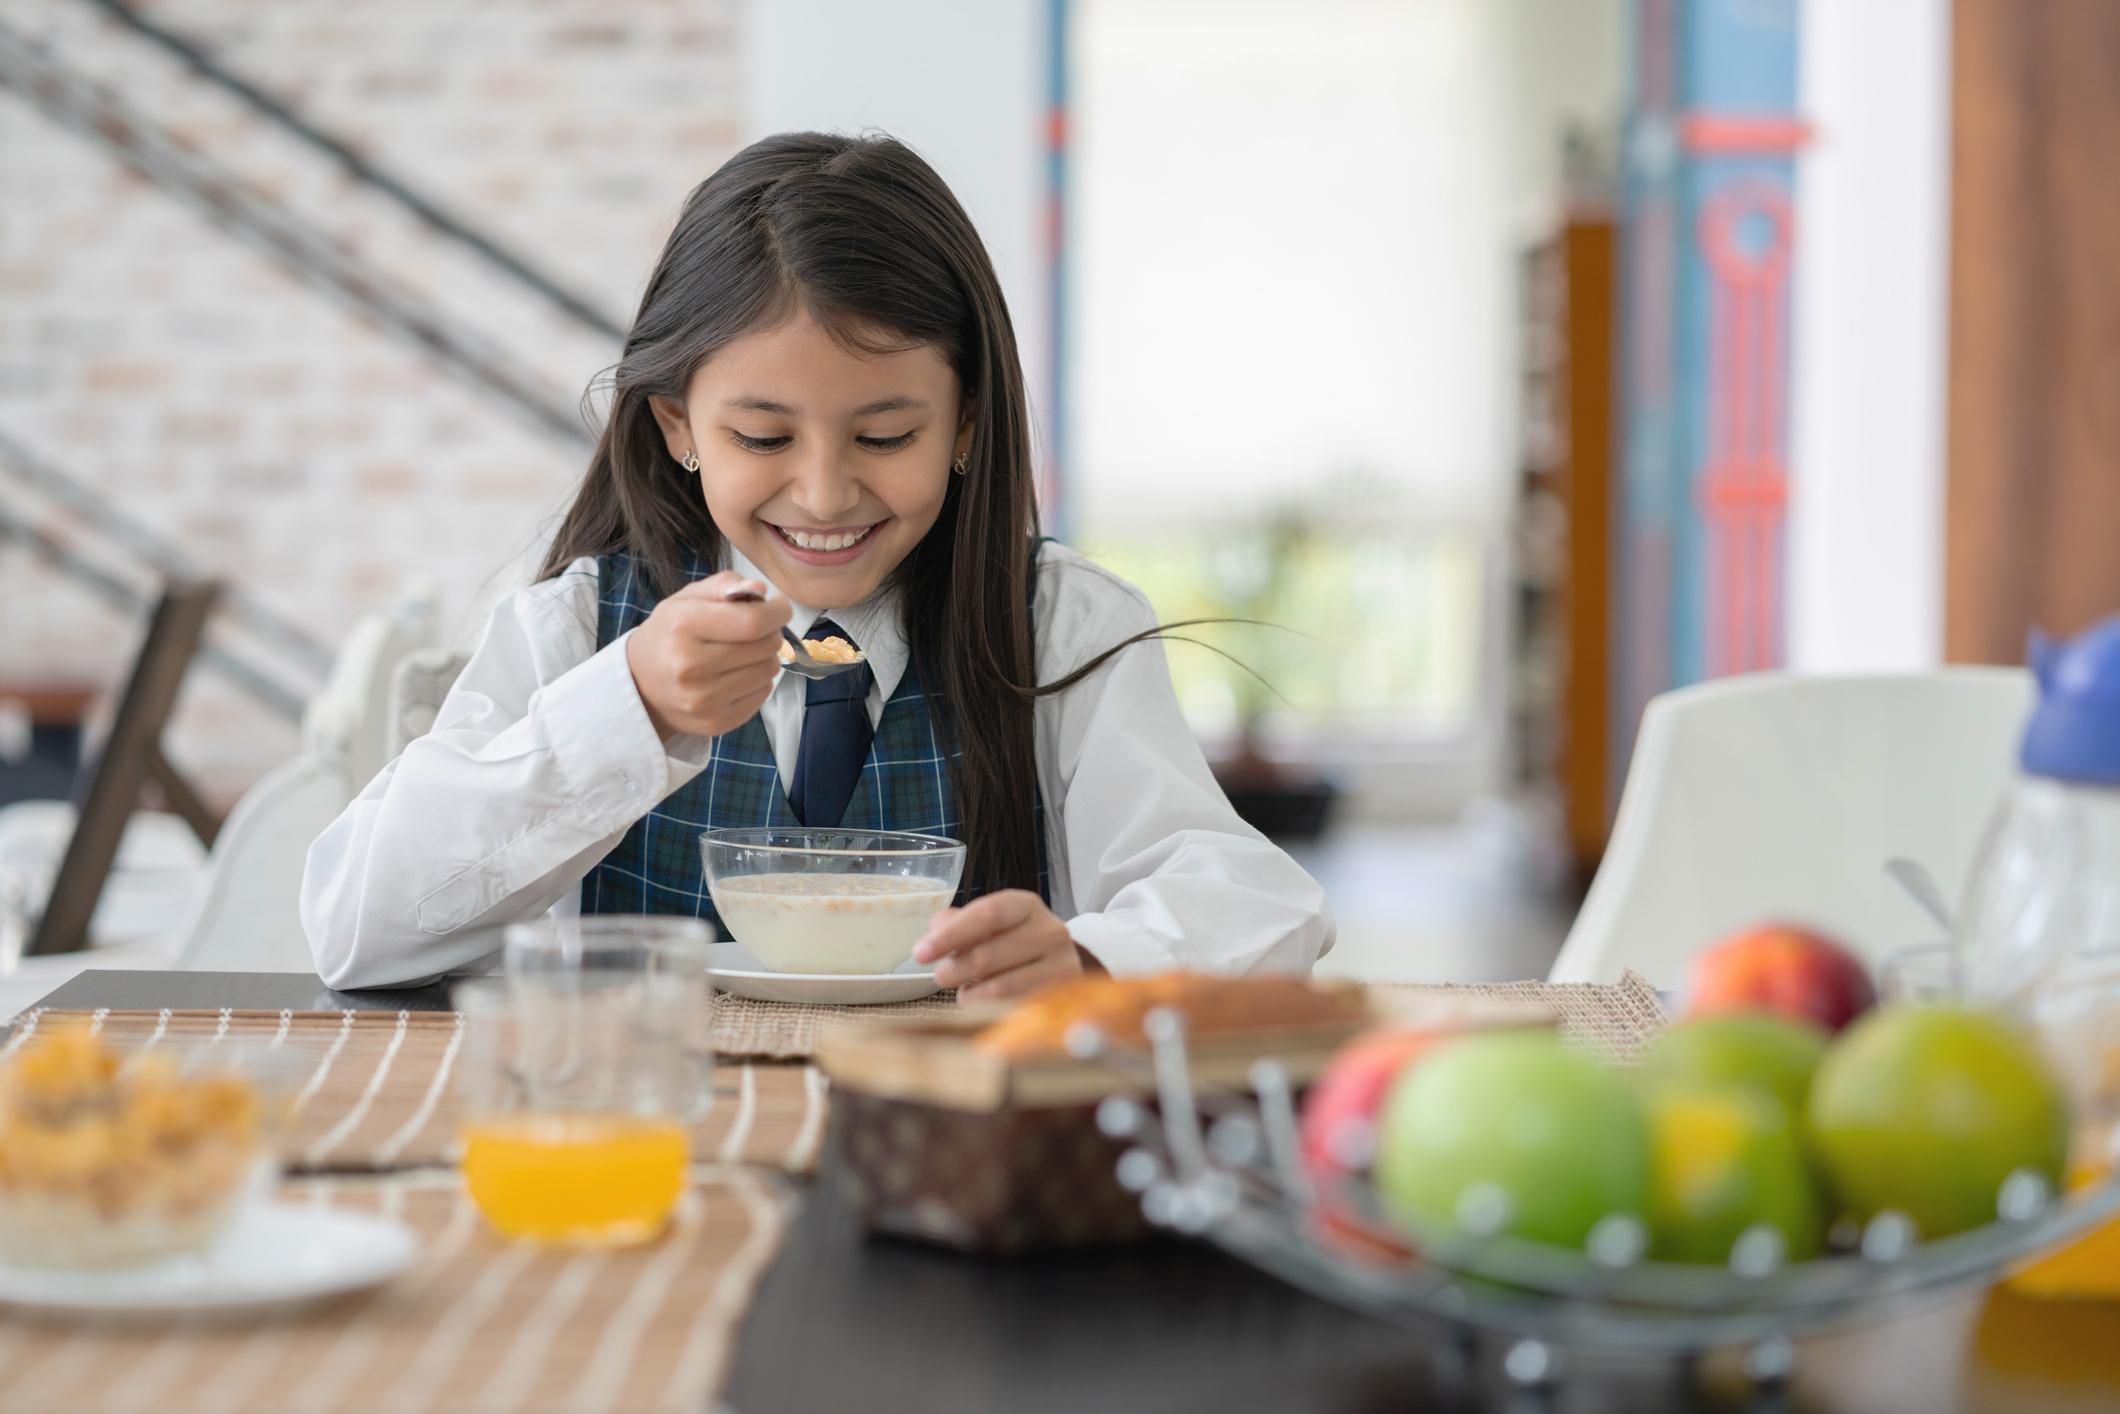 Завтрак может улучшить успеваемость ребенка в школе: исследование